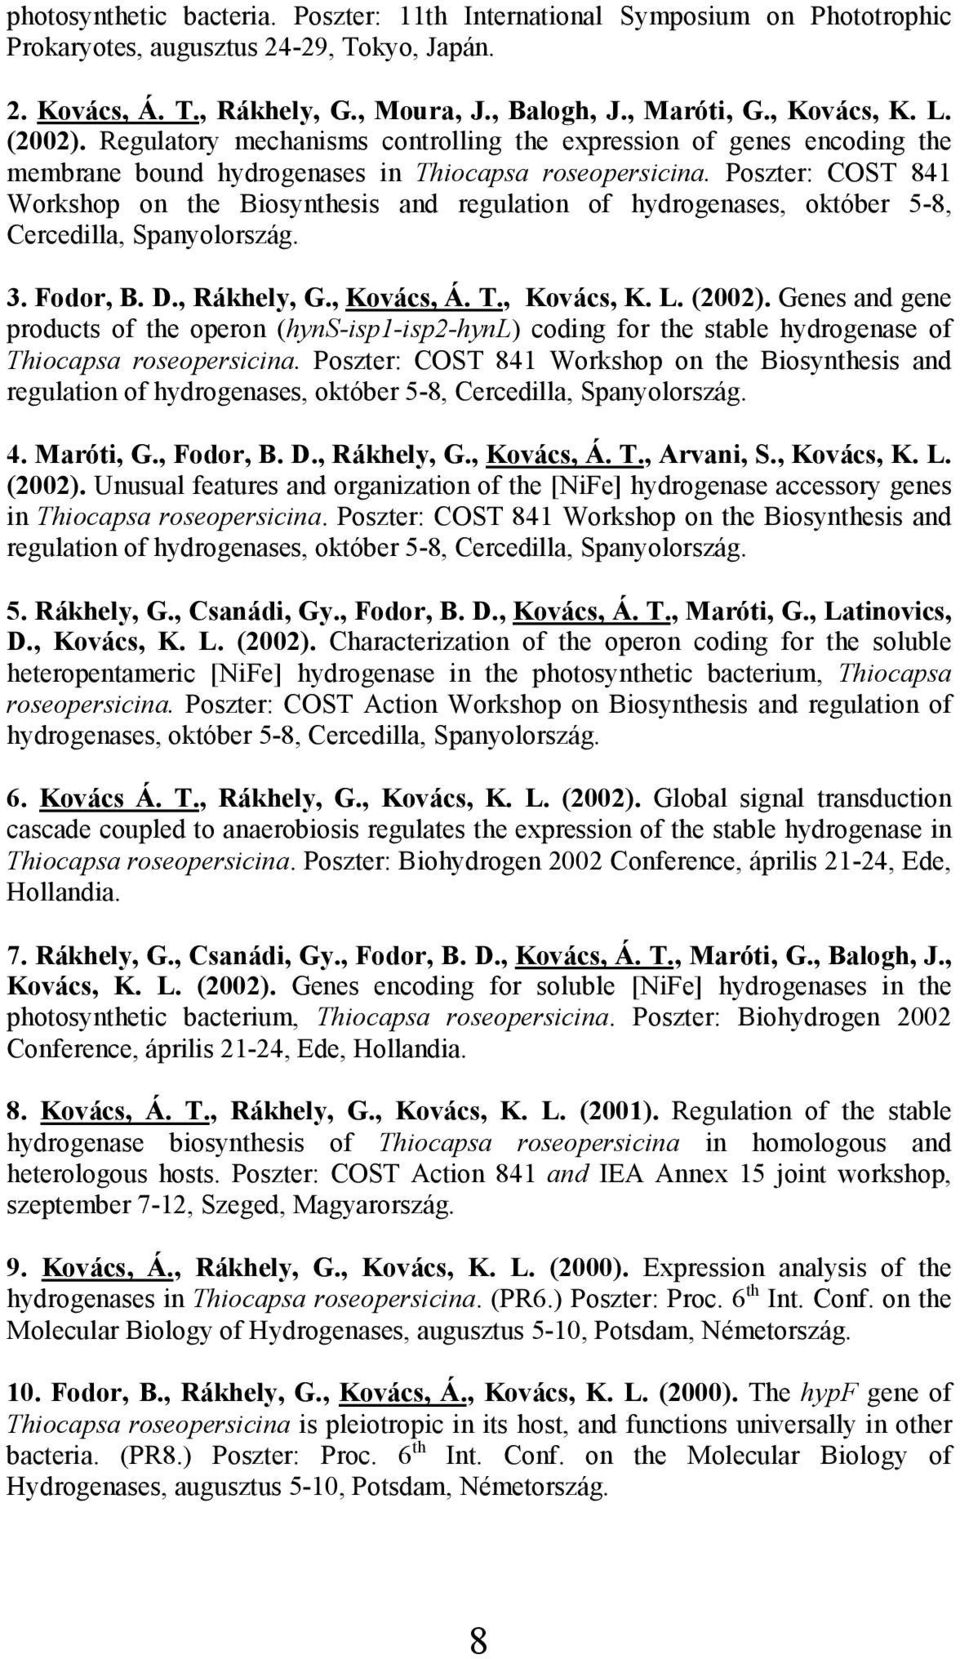 Poszter: COST 841 Workshop on the Biosynthesis and regulation of hydrogenases, október 5-8, Cercedilla, Spanyolország. 3. Fodor, B. D., Rákhely, G., Kovács, Á. T., Kovács, K. L. (2002).